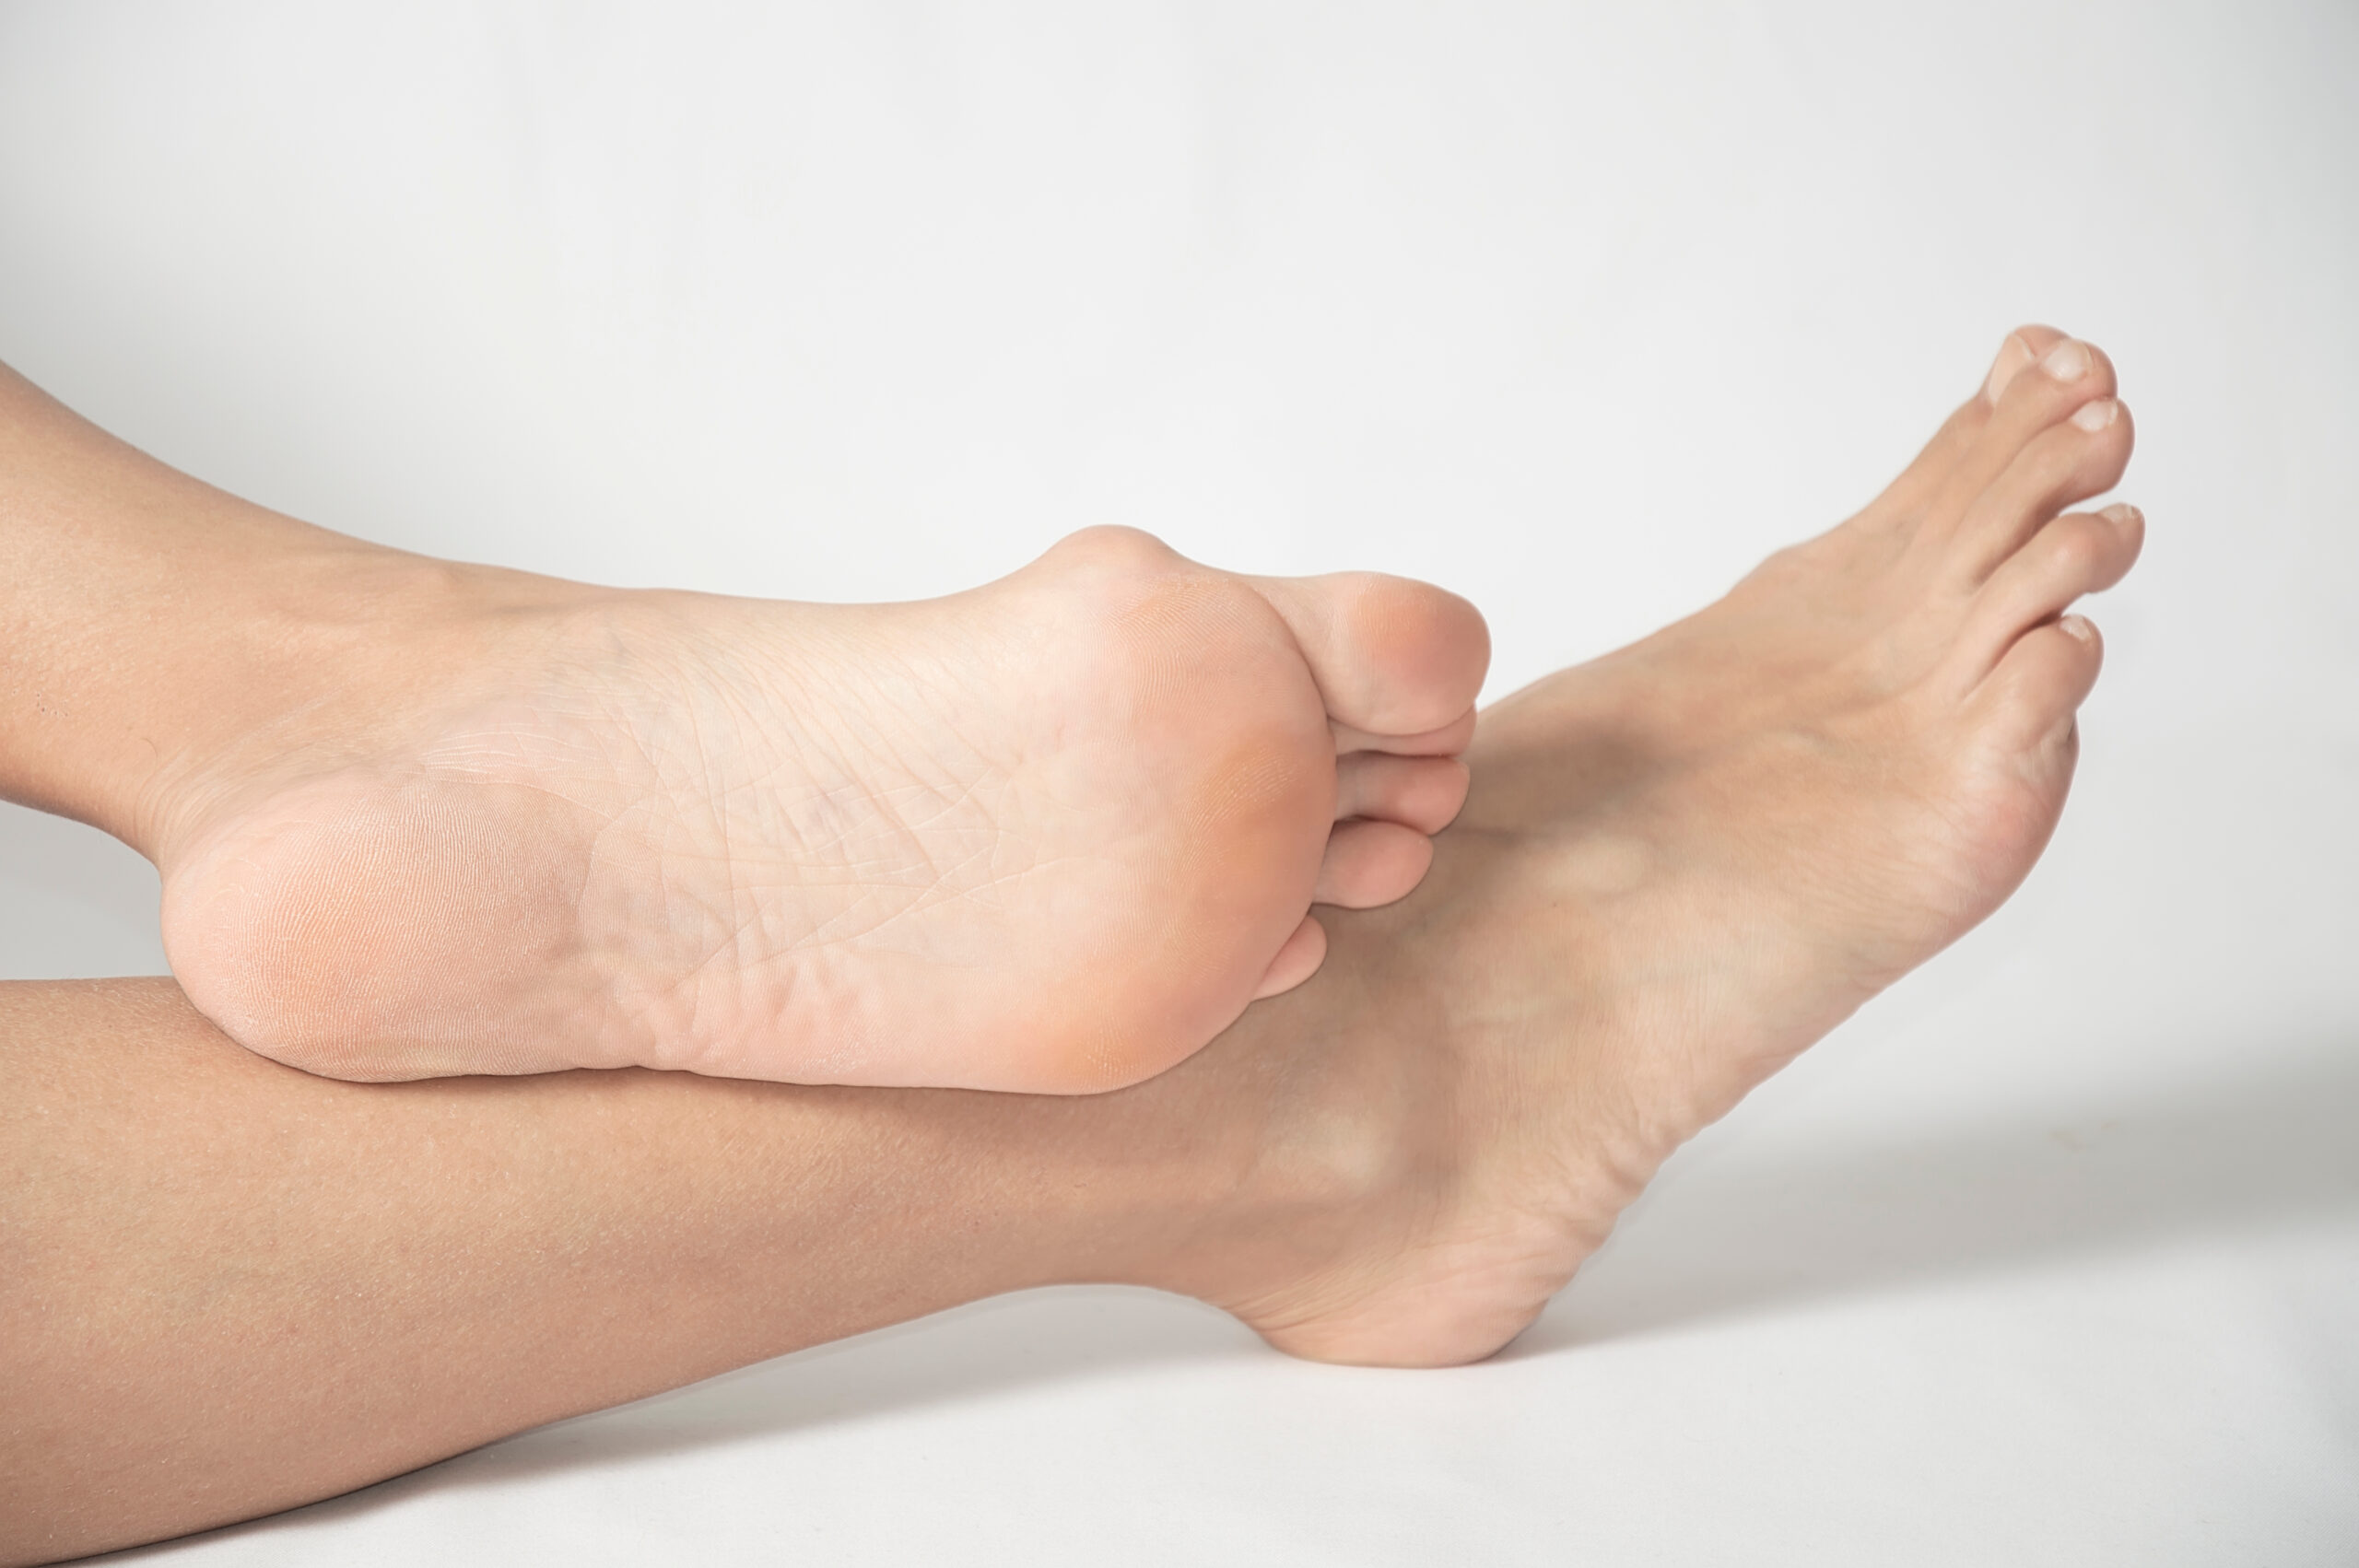 男女問わず多くの方が抱える足の悩みのひとつ、外反母趾。巷には数多の外反母趾対策グッズやサービスがあふれている。他方、外反母趾の根本的な原因にアドレスしないものも多くあり、逆に外反母趾の症状を症状を助長する懸念もある